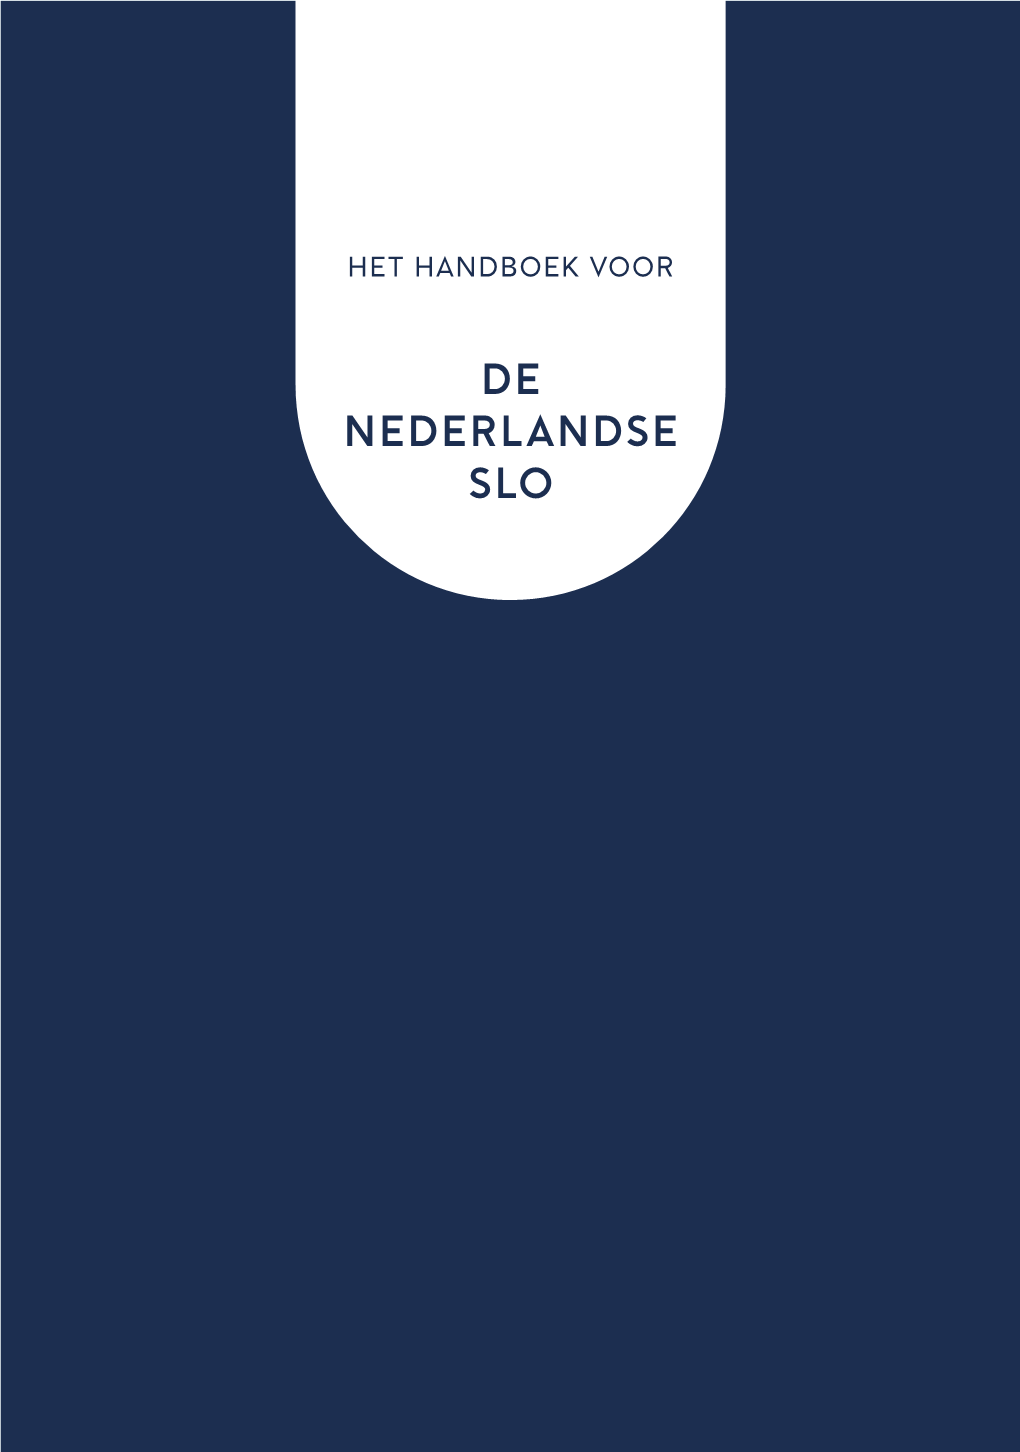 Handboek Het Handboek Voor De Nederlandse SLO